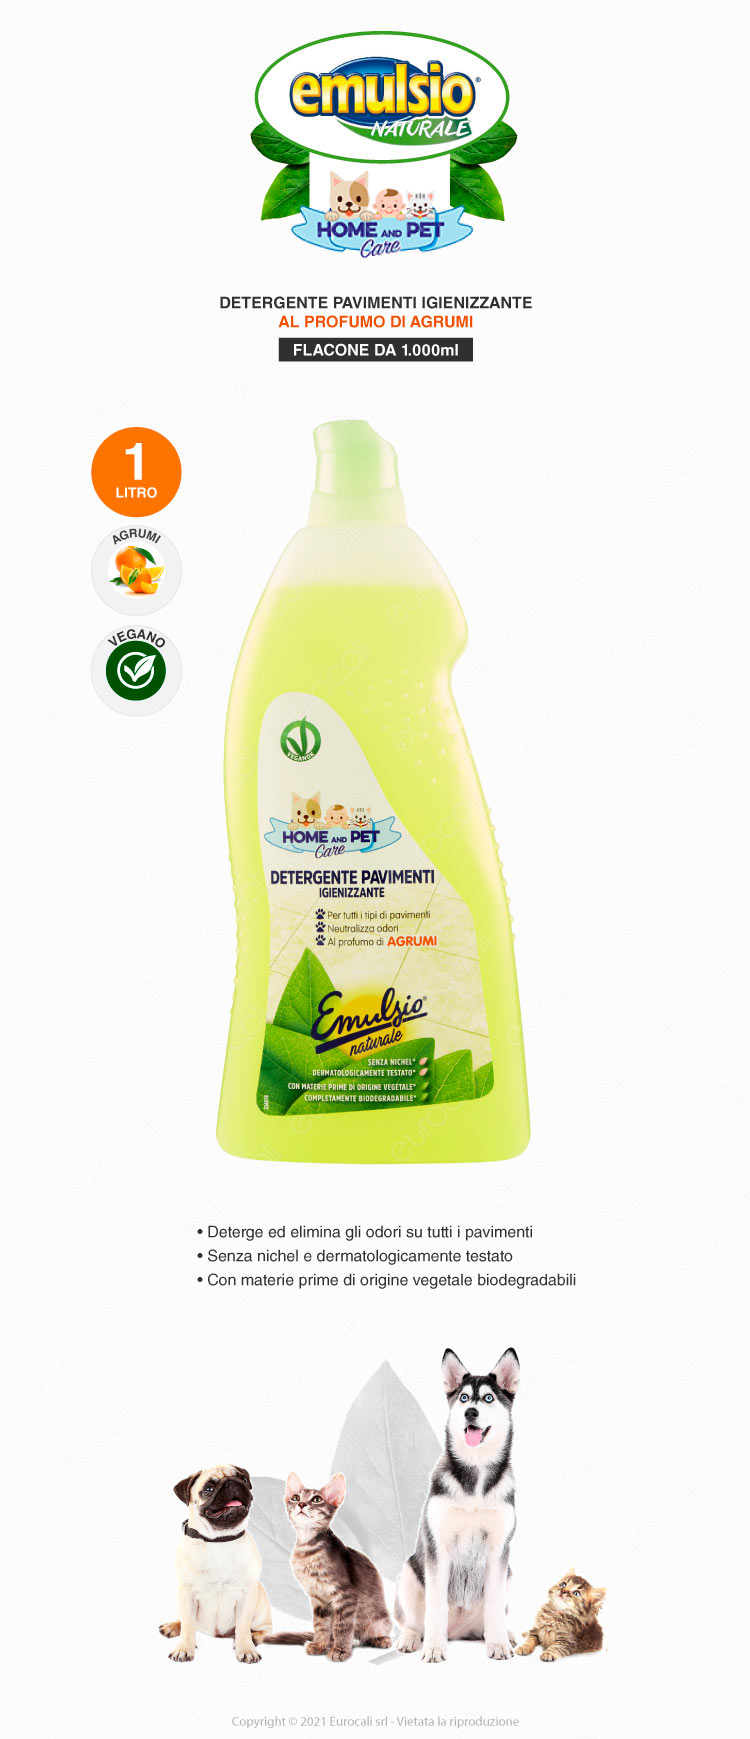 emulsio detergente pavimenti biodegradabile home and pet